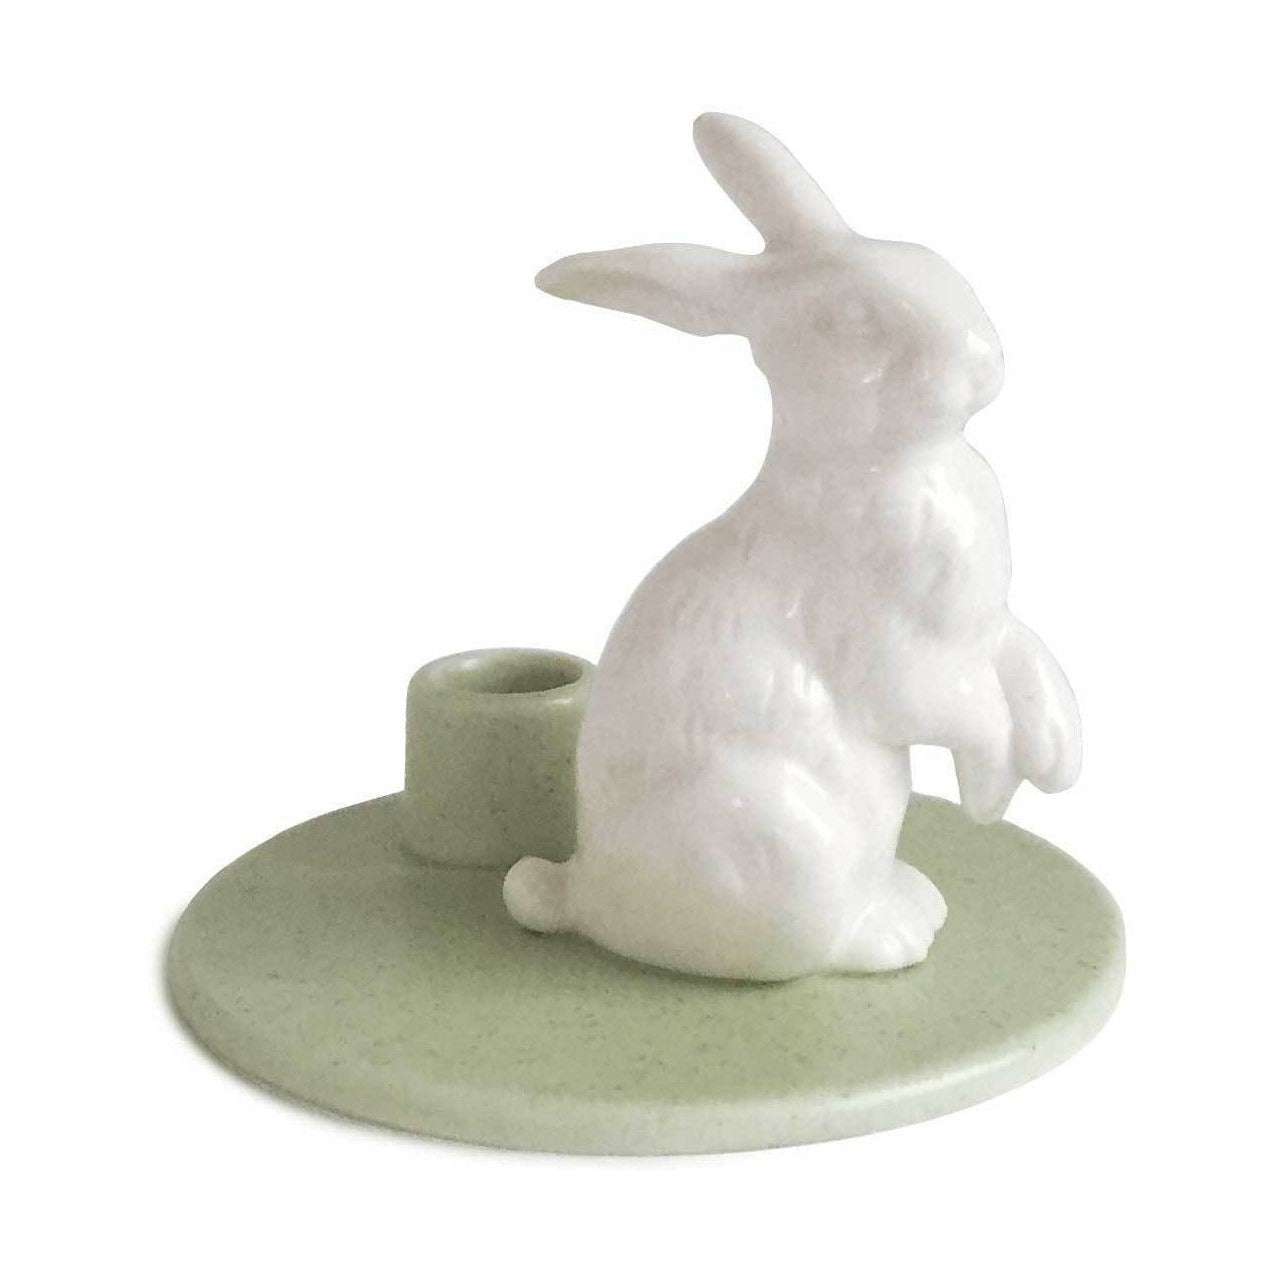 Dottir Födelsedagshistorier Rabbit Green, 8 cm